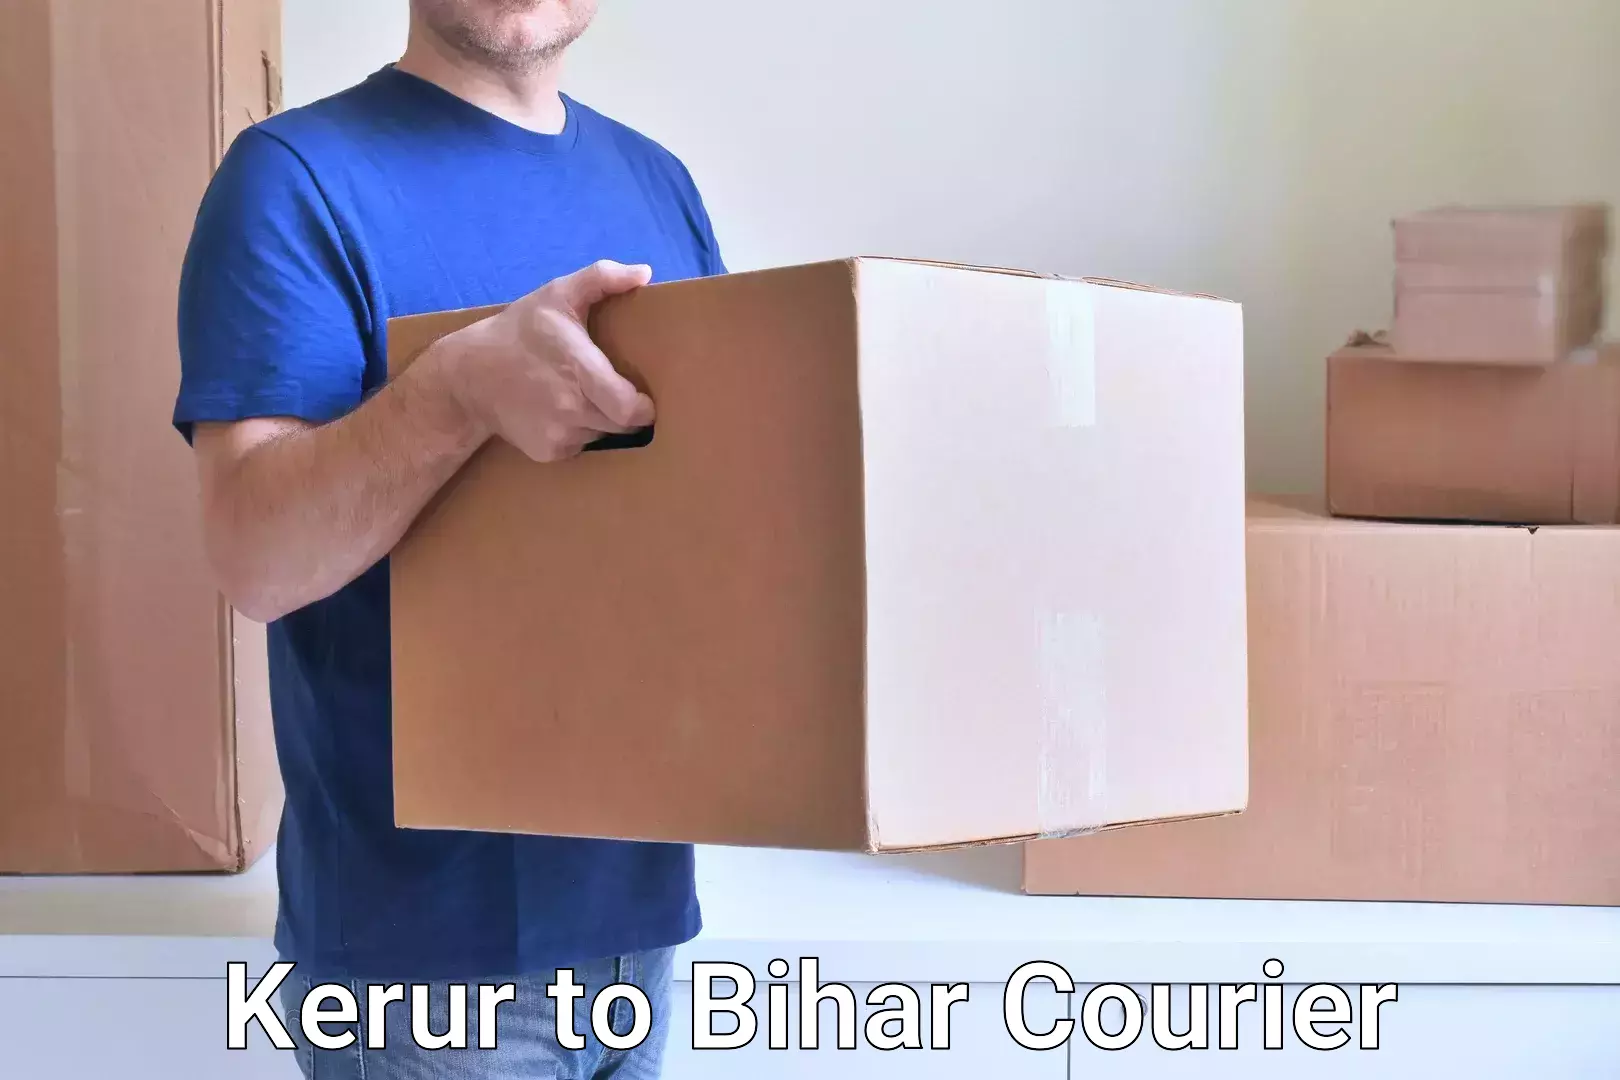 Efficient freight service in Kerur to Bihar